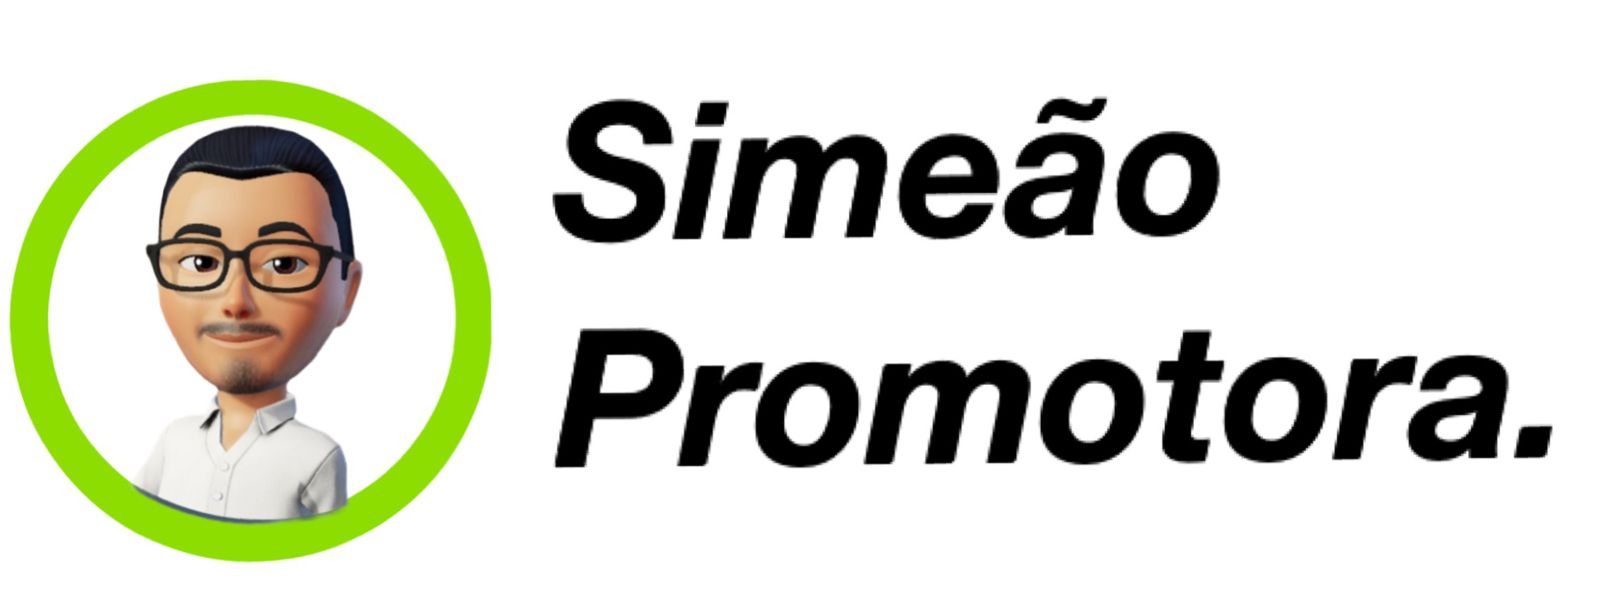 Simeão Promotora